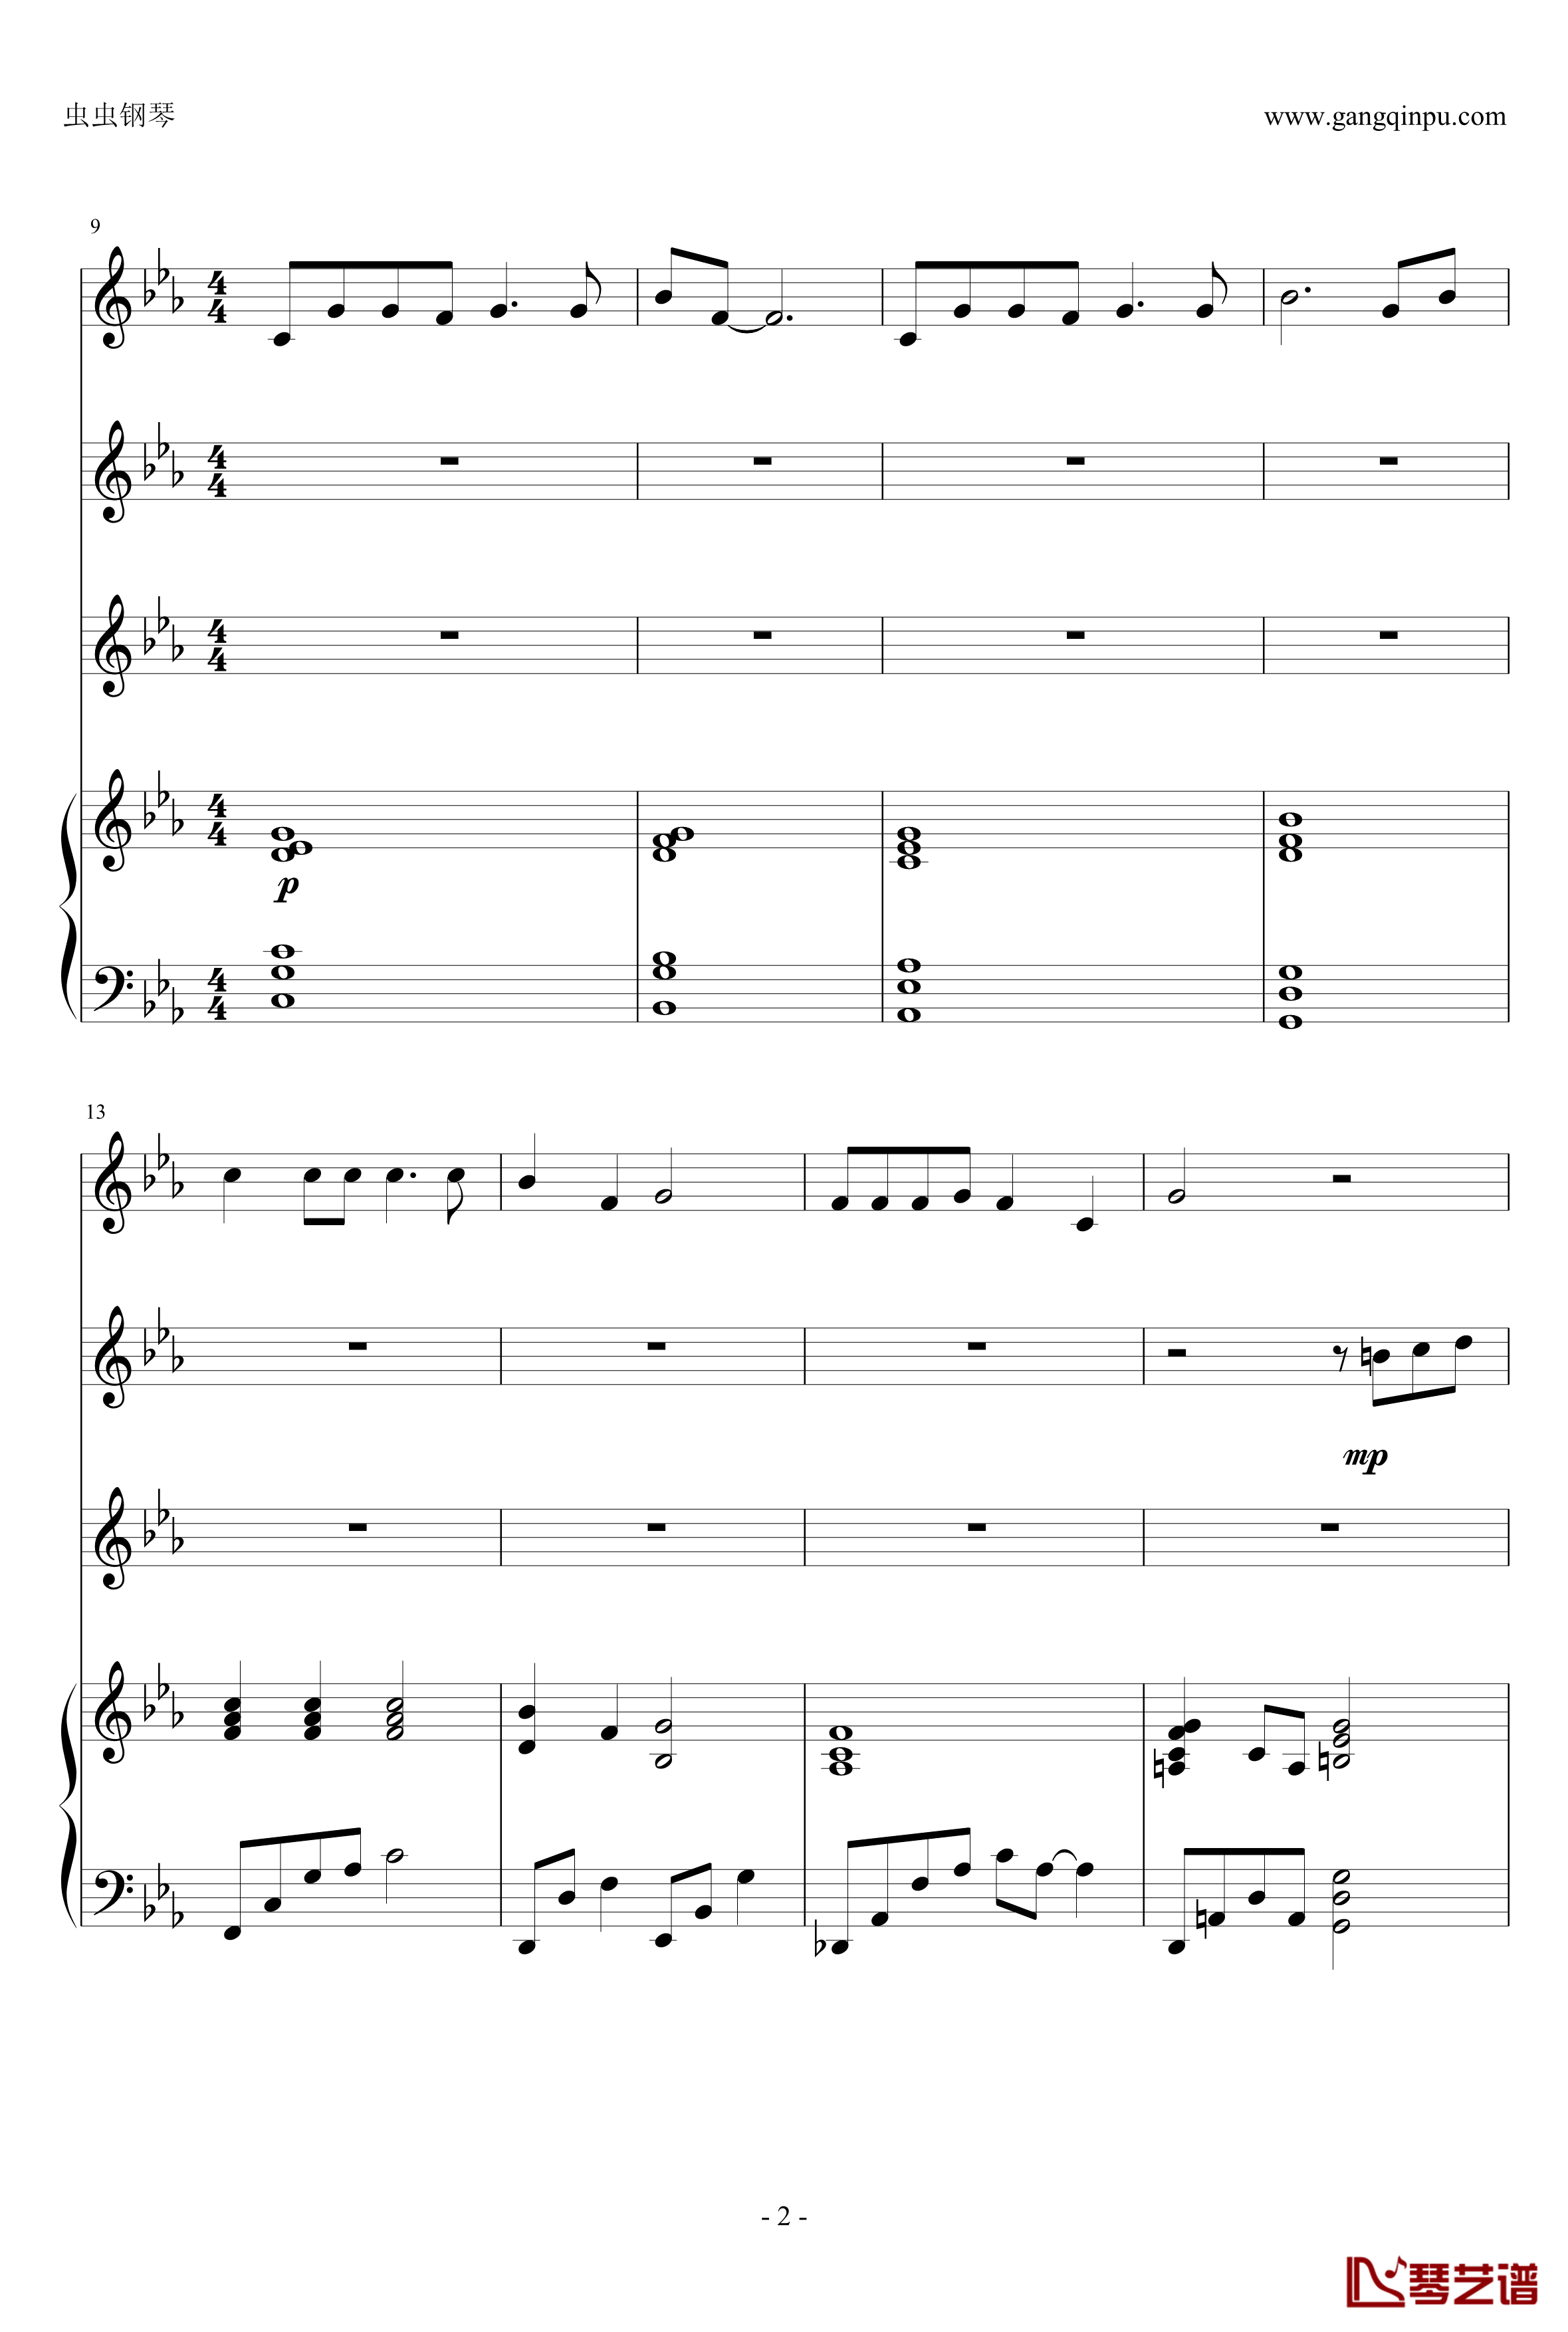 幽灵公主钢琴谱-合奏版总谱-二胡、古筝、小提琴、钢琴-久石让2